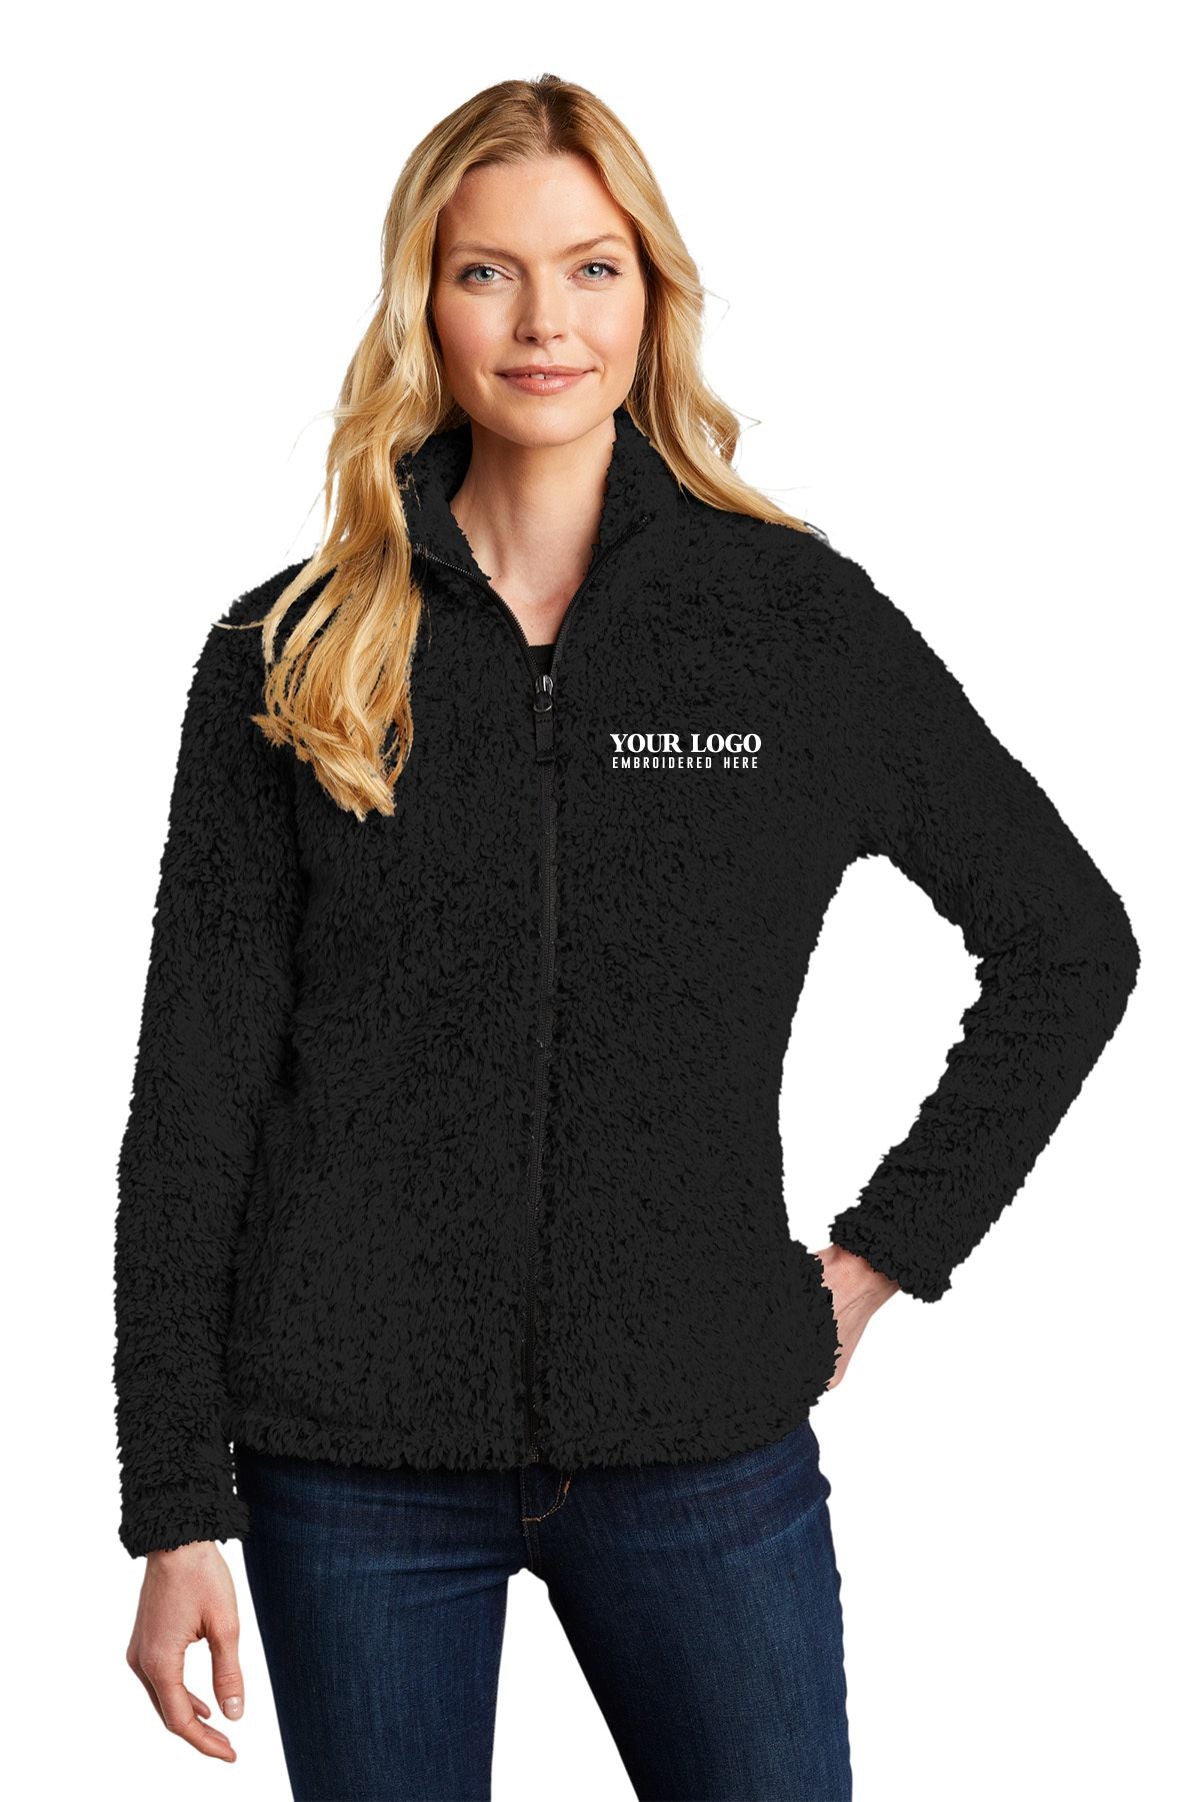 Monogrammed Sherpa Jacket Personalized Sherpa Fleece Women 